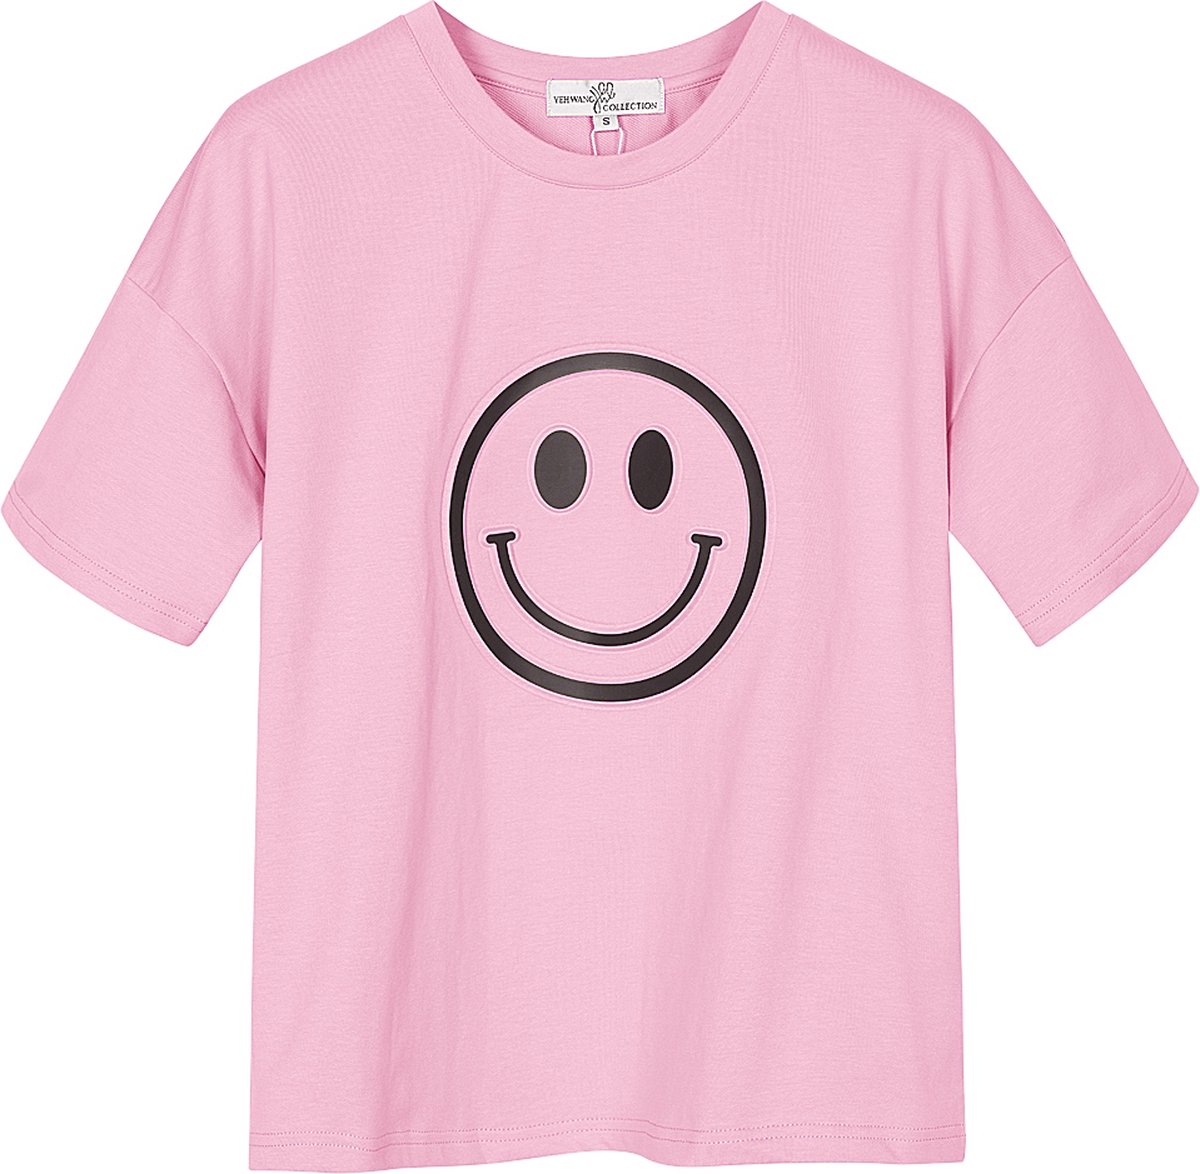 Yehwang - T-shirt met smiley - Lichtroze - Maat: L